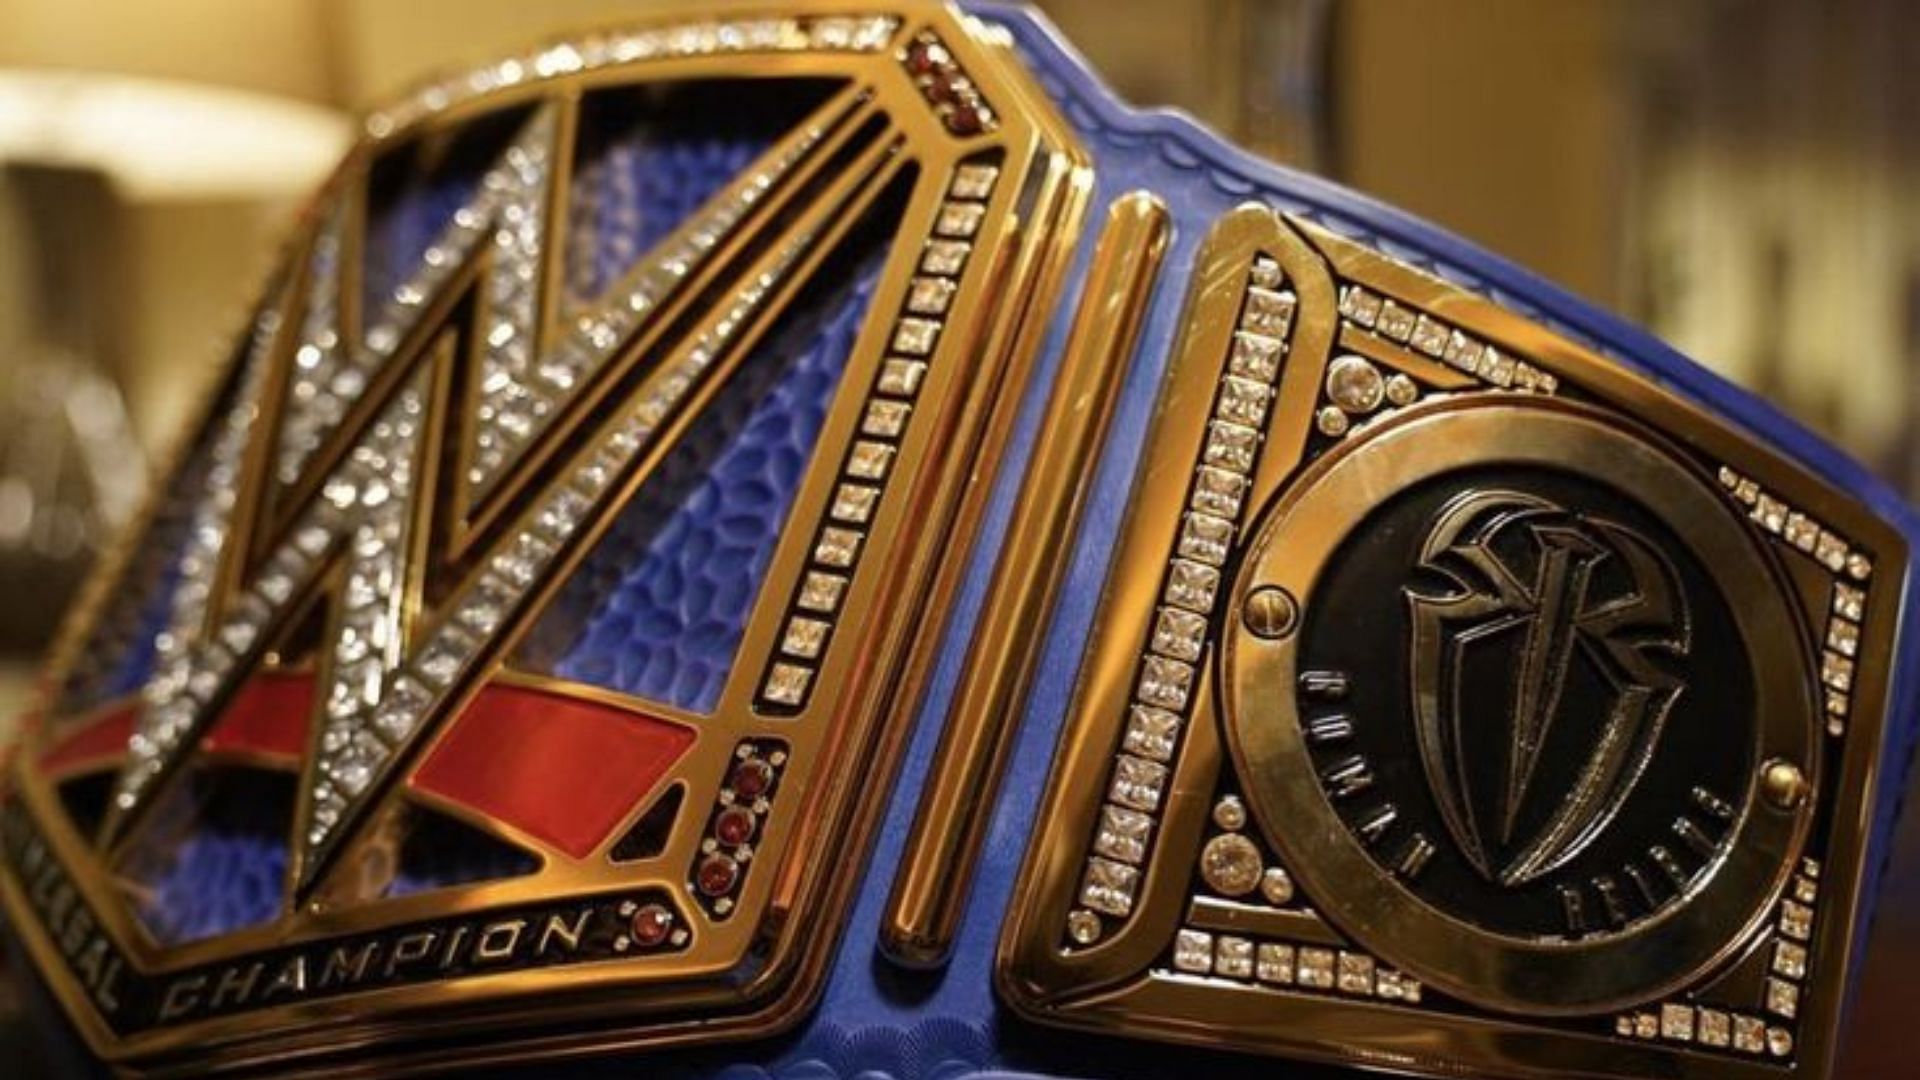 The WWE Universal Championship belt